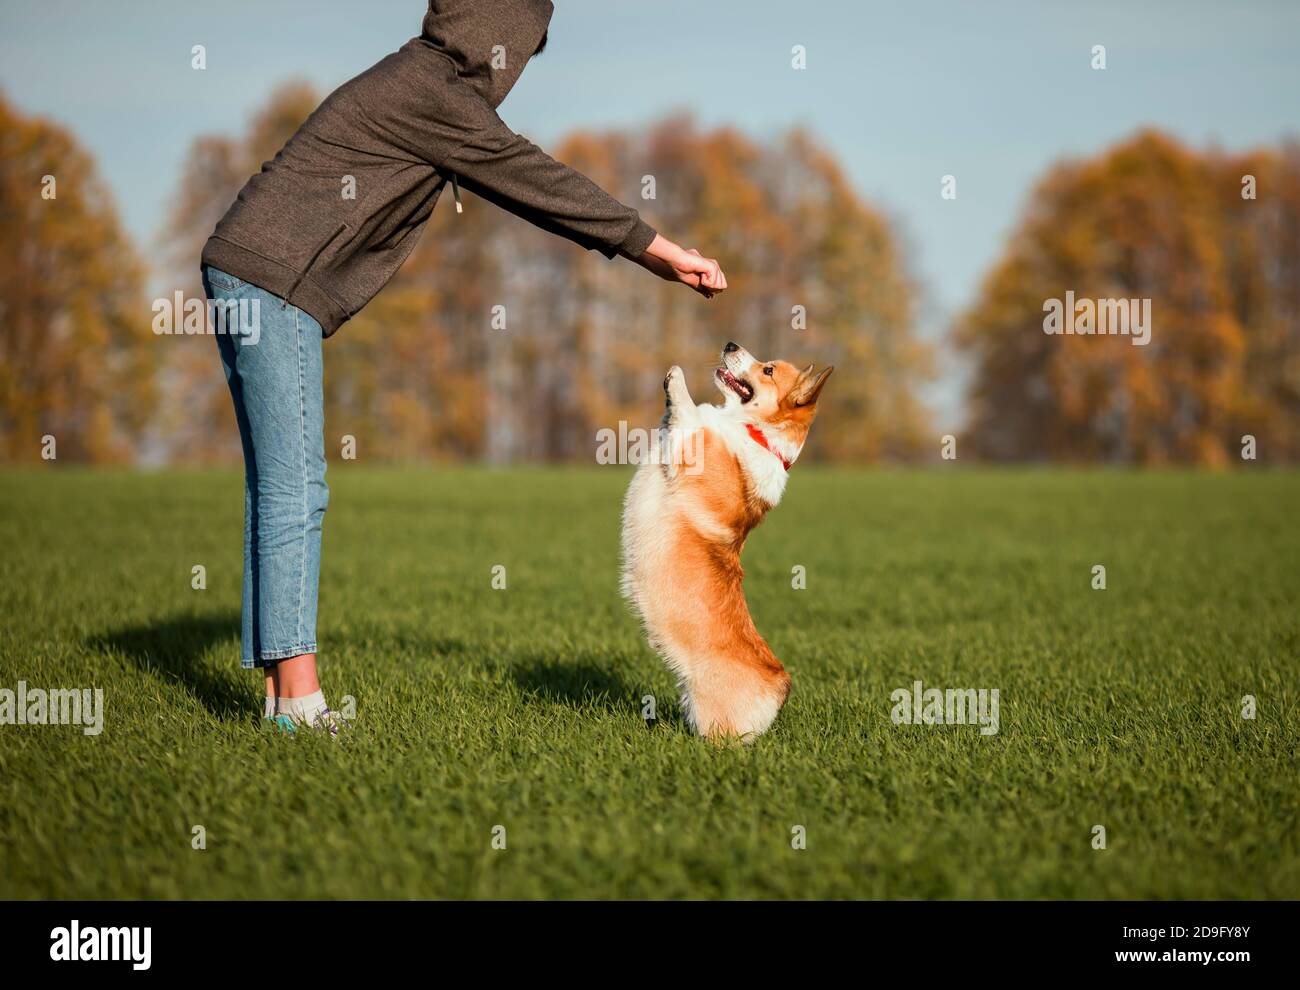 Jeune fille jouant et formant mignon chien chiot Corgi en automne Garez-vous sur de l'herbe verte Banque D'Images